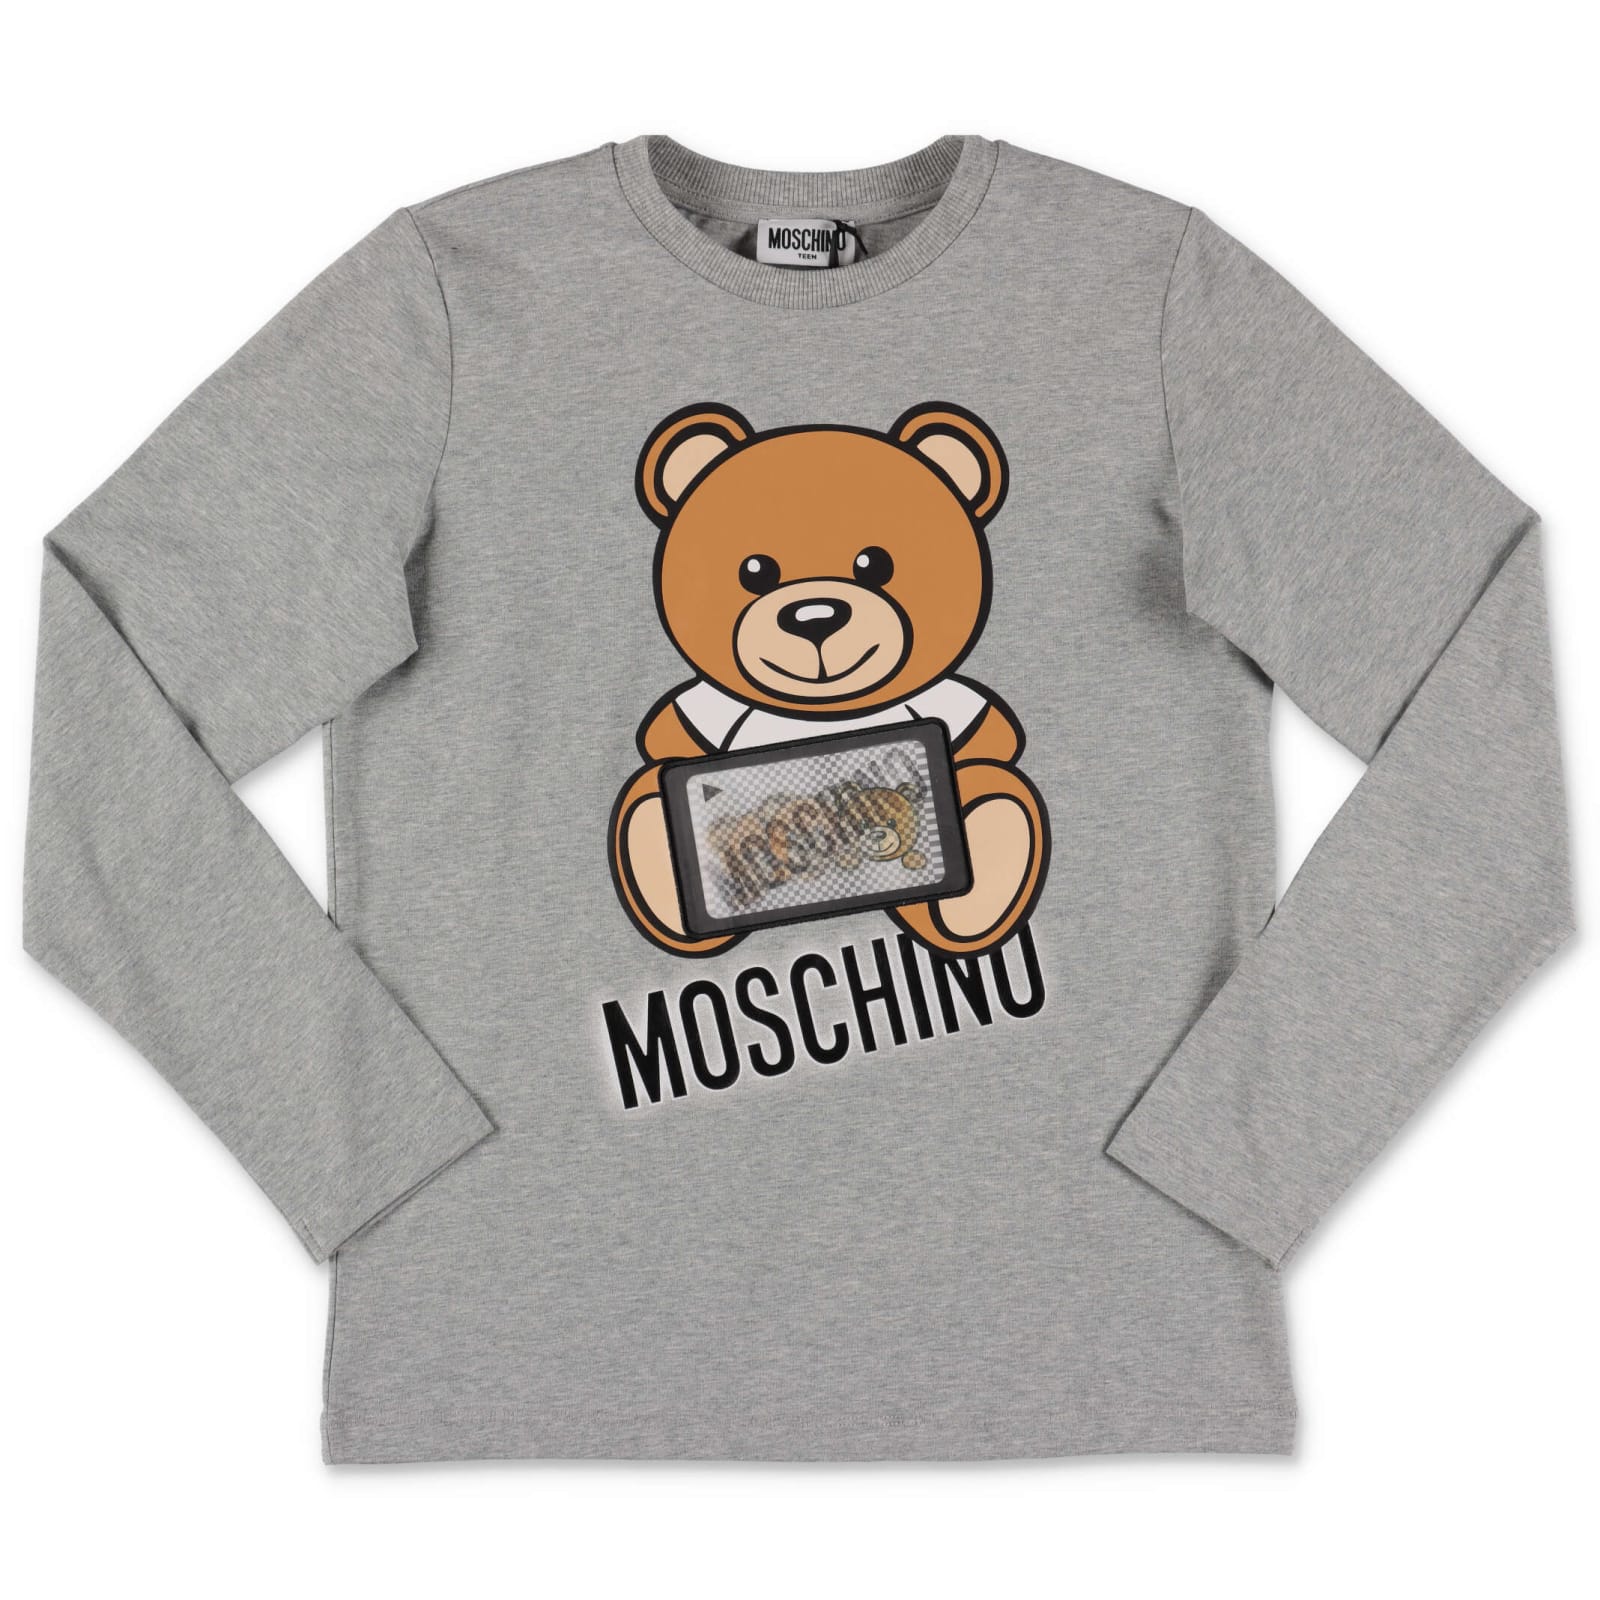 moschino t shirt price